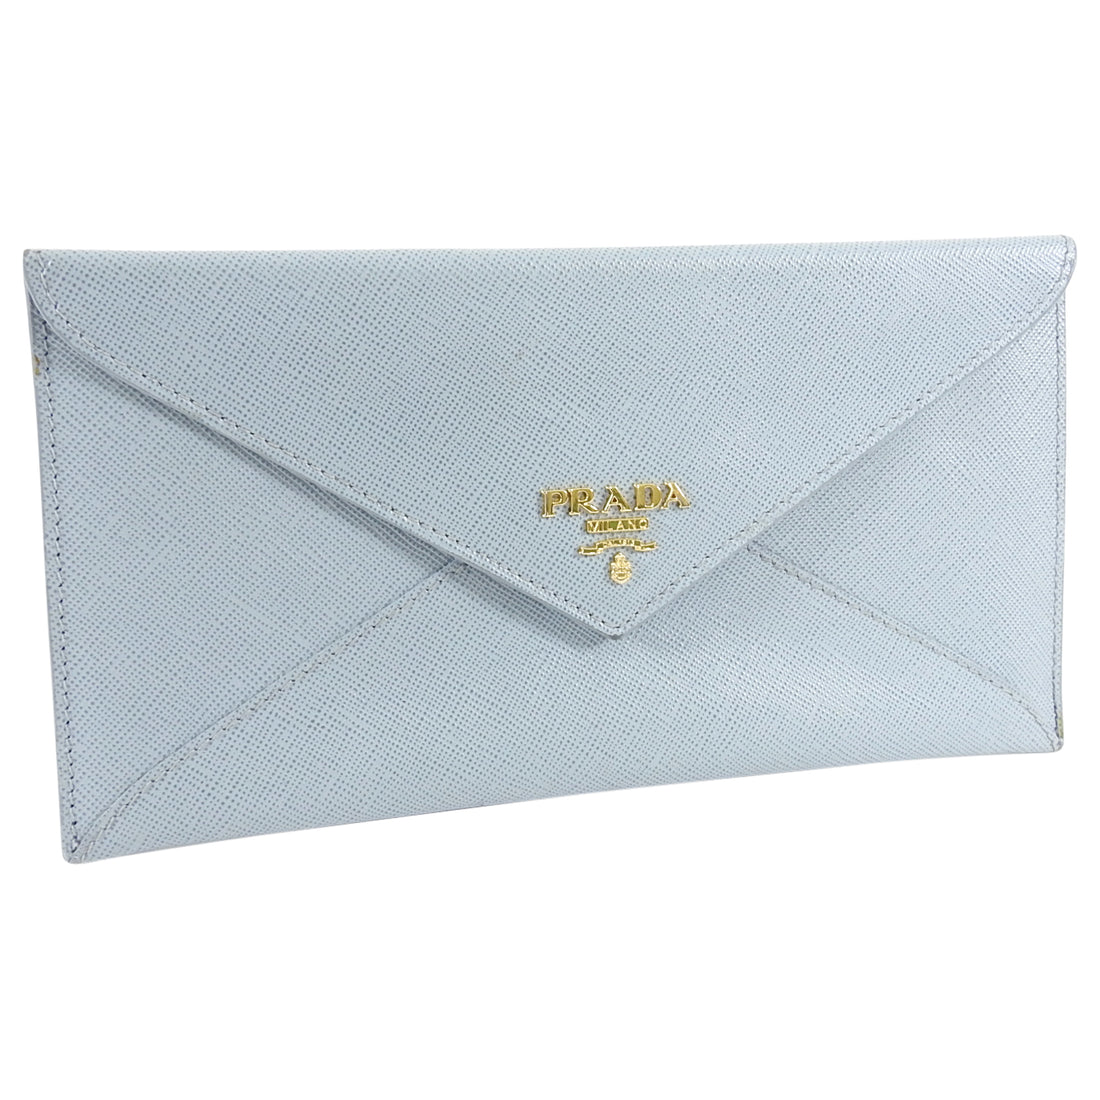 Prada Light blue wallet in Saffiano